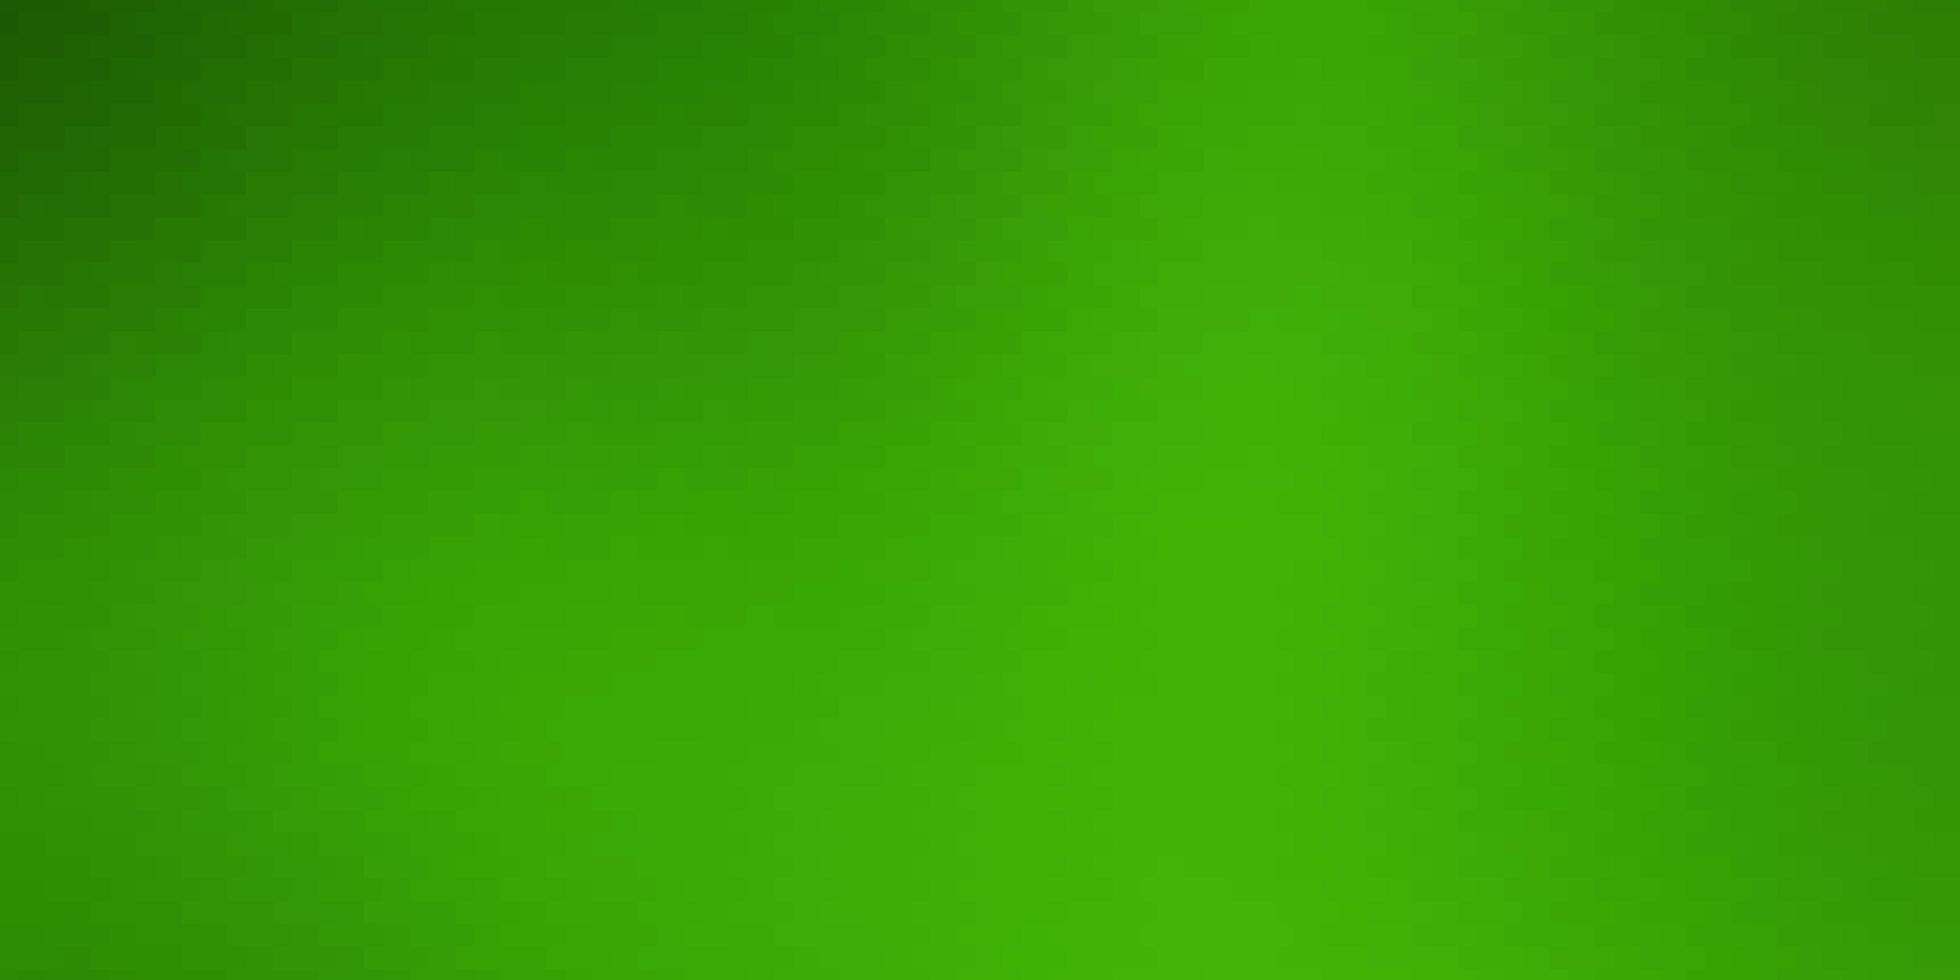 sfondo verde chiaro in stile poligonale. vettore